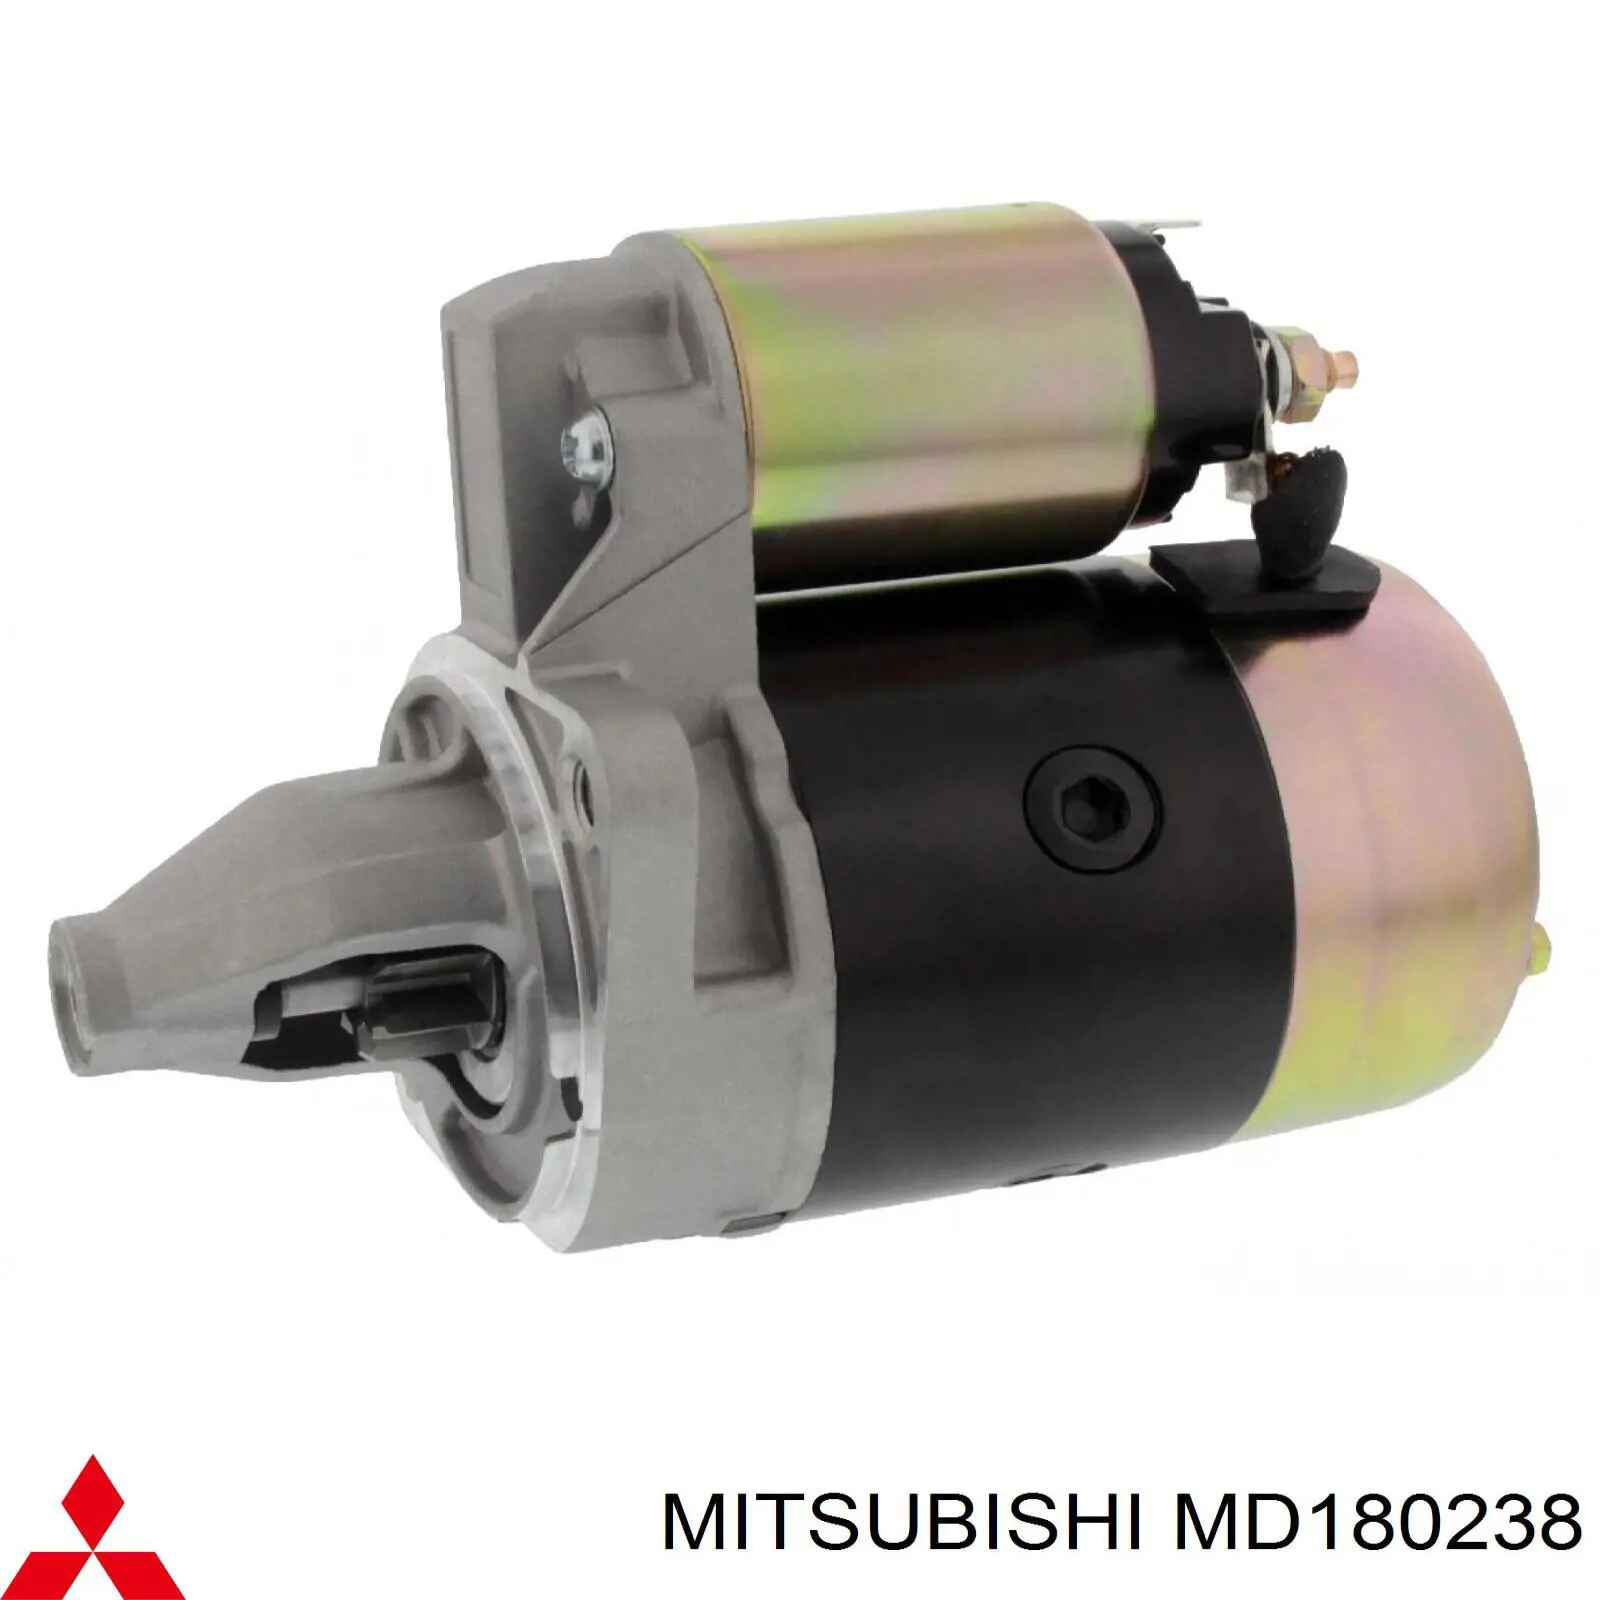 MD180238 Mitsubishi motor de arranque